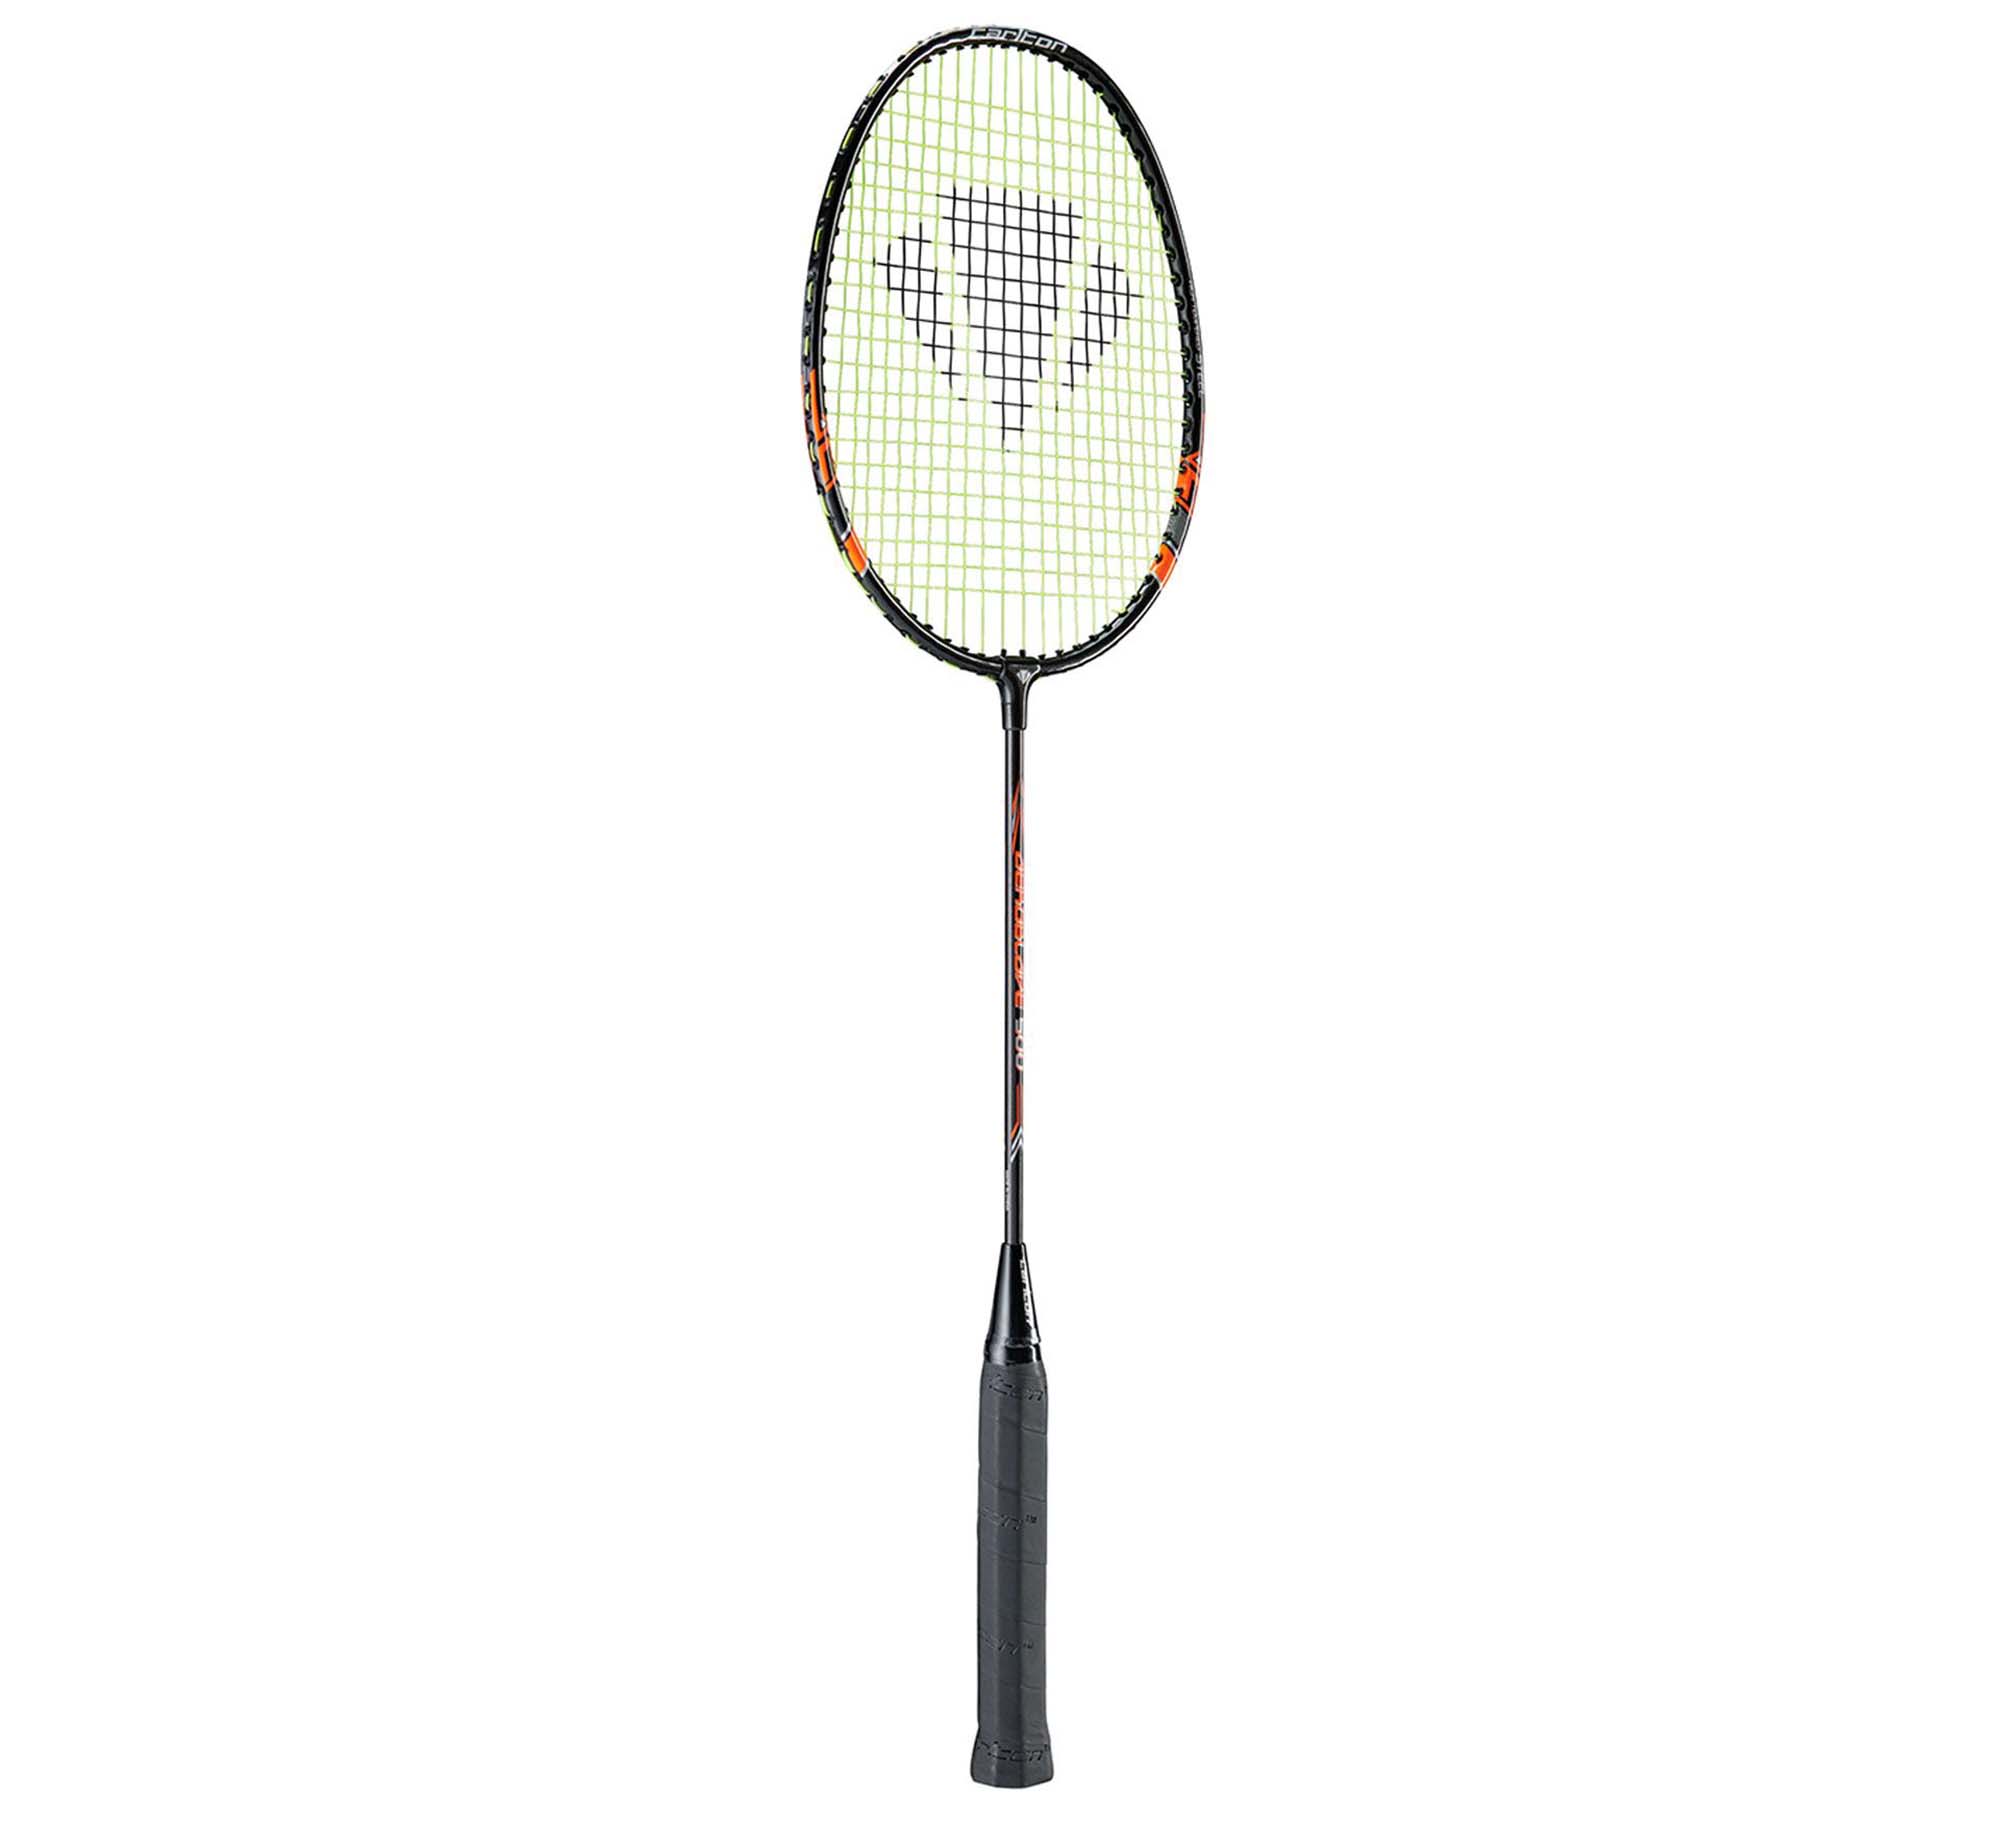 CARLTON Euroblade Badminton Racket 500